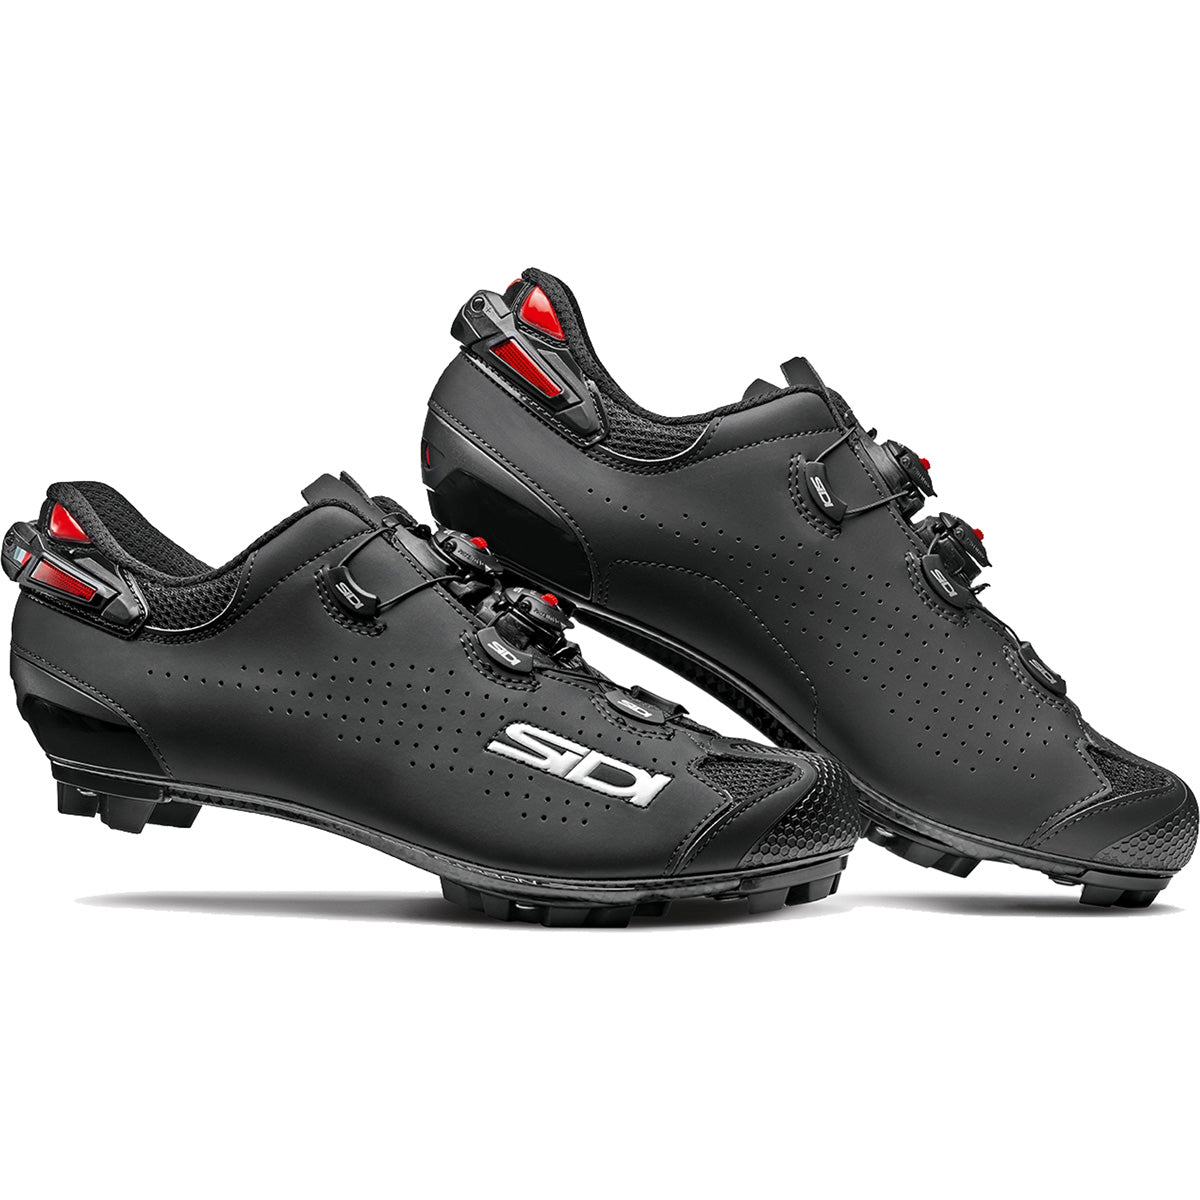 Sidi Tiger 2 Mountain Bike Shoes - Matte Black/Black